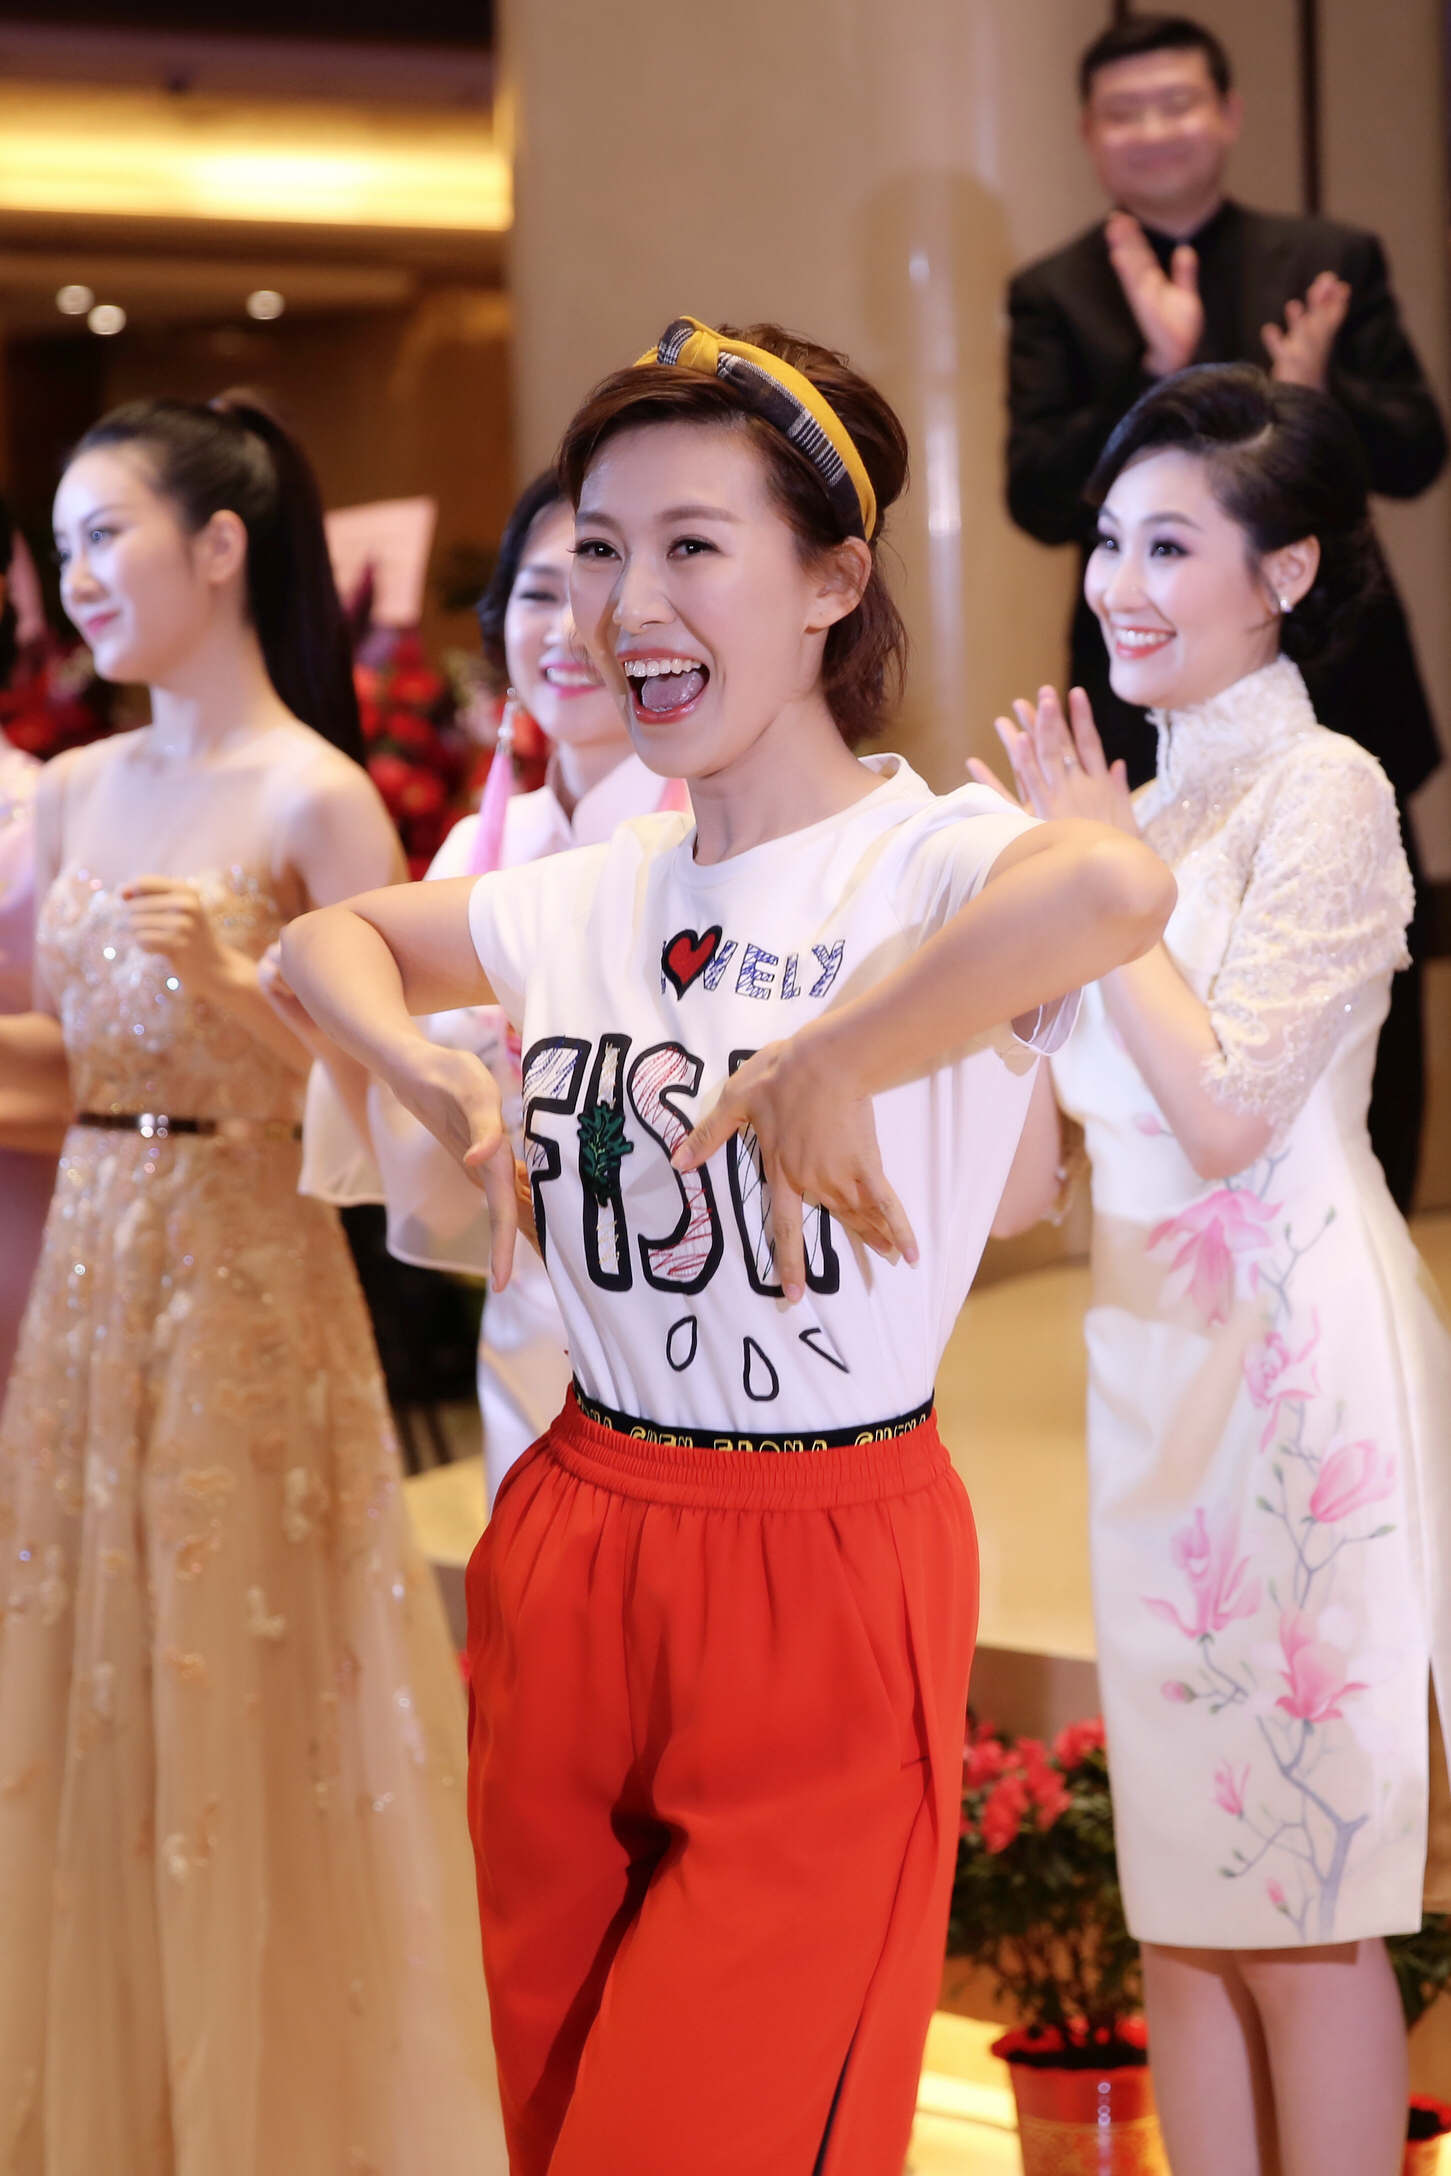 常思思出席中国风音乐会 携民歌手大跳鸭子舞